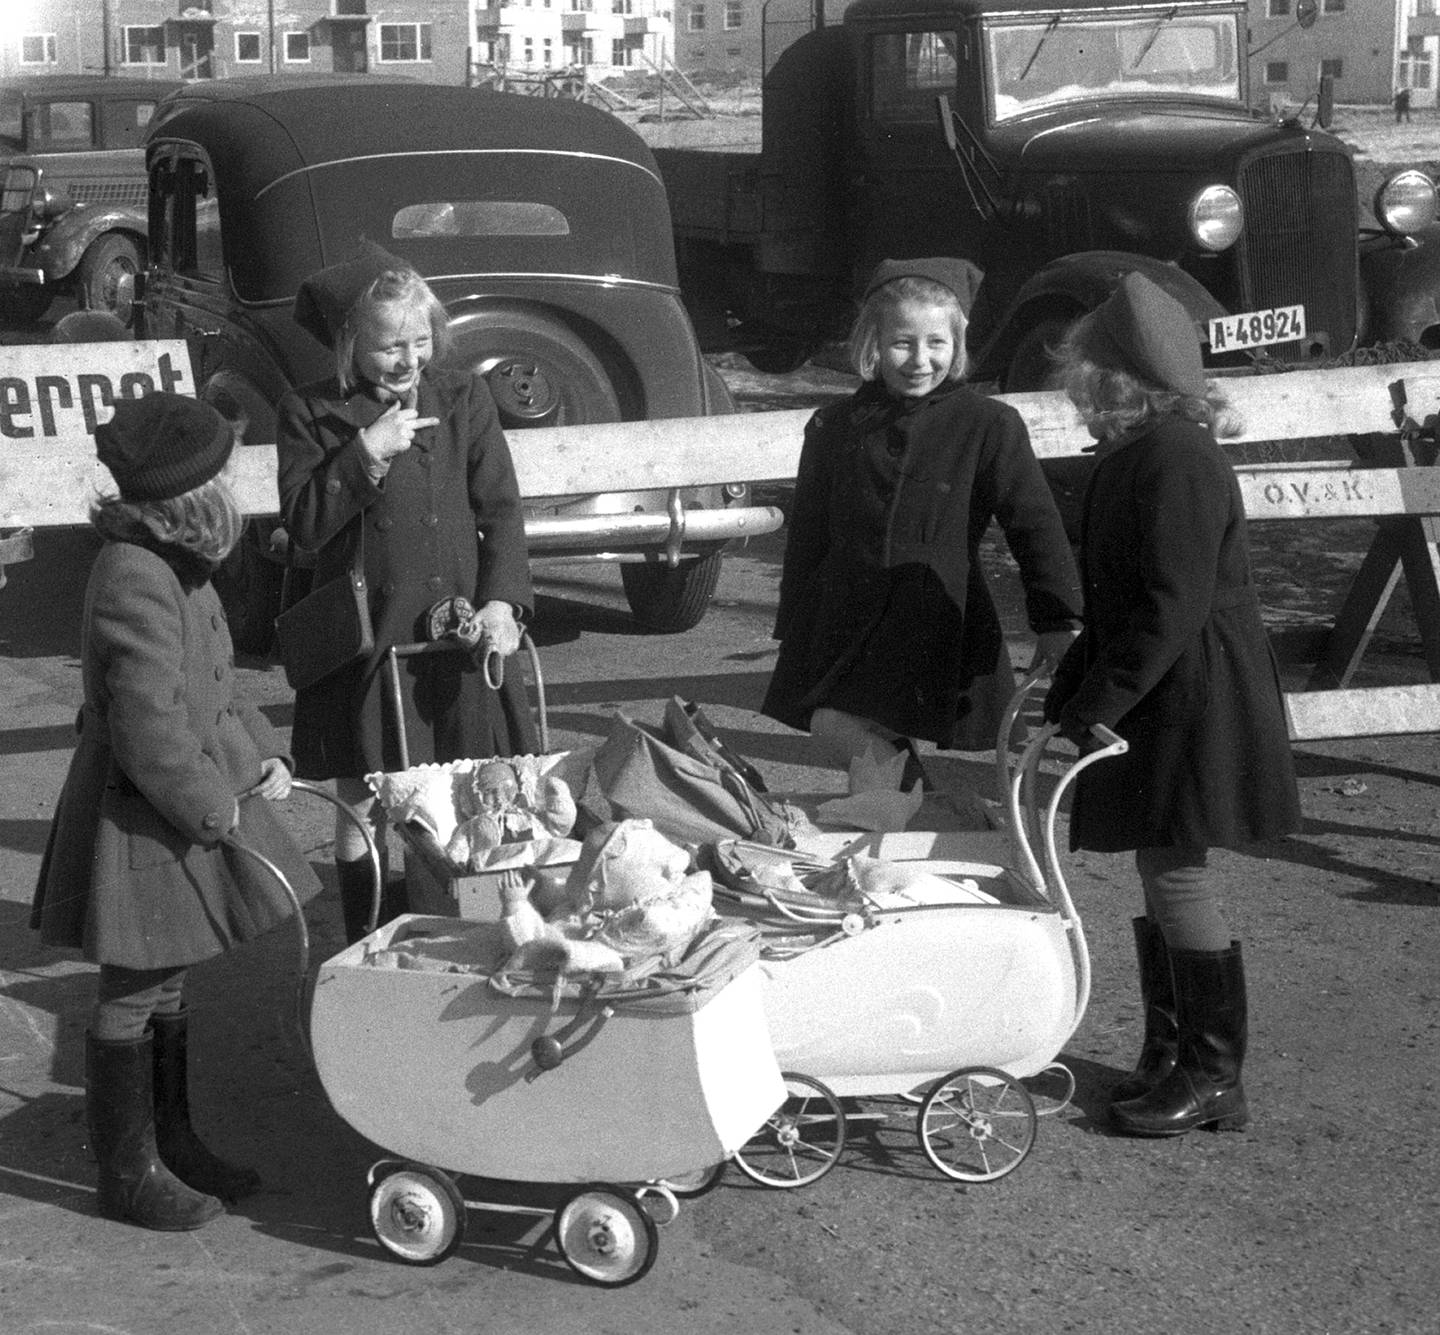 Fire jenter med dokker og dokkevogner, 
mars 1948. Biler i bakgrunnen.